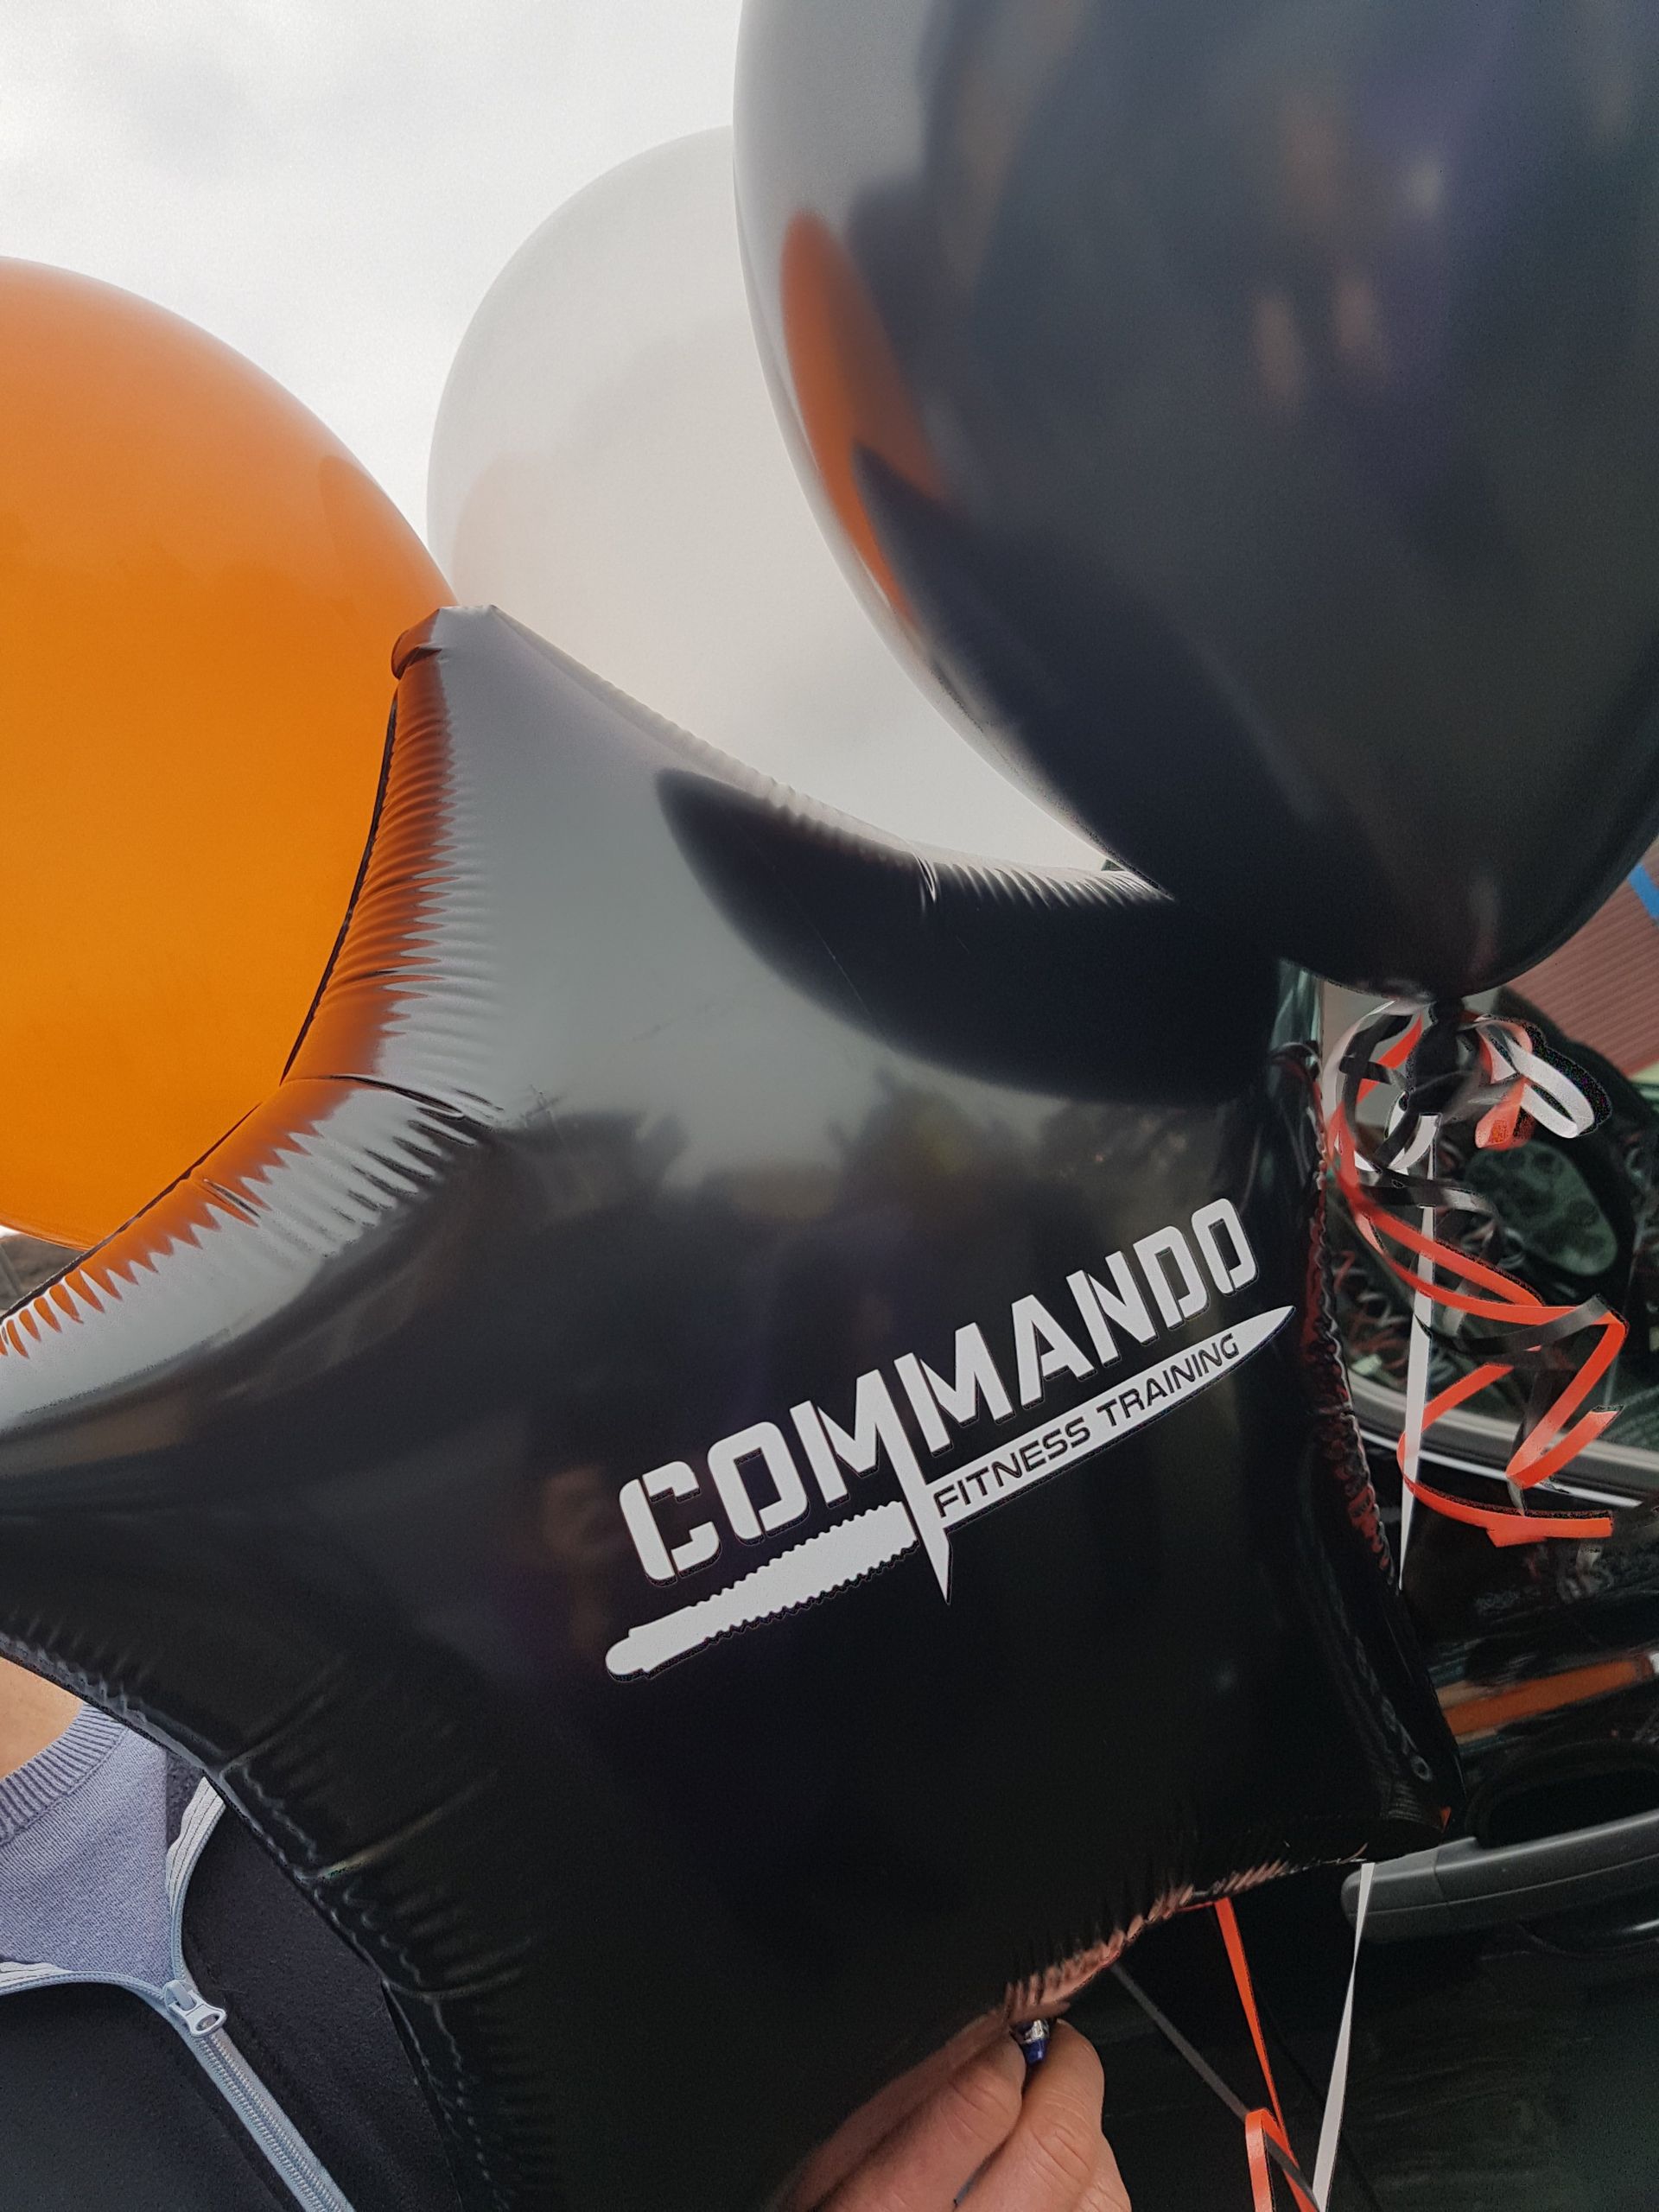 commando written in a balloon